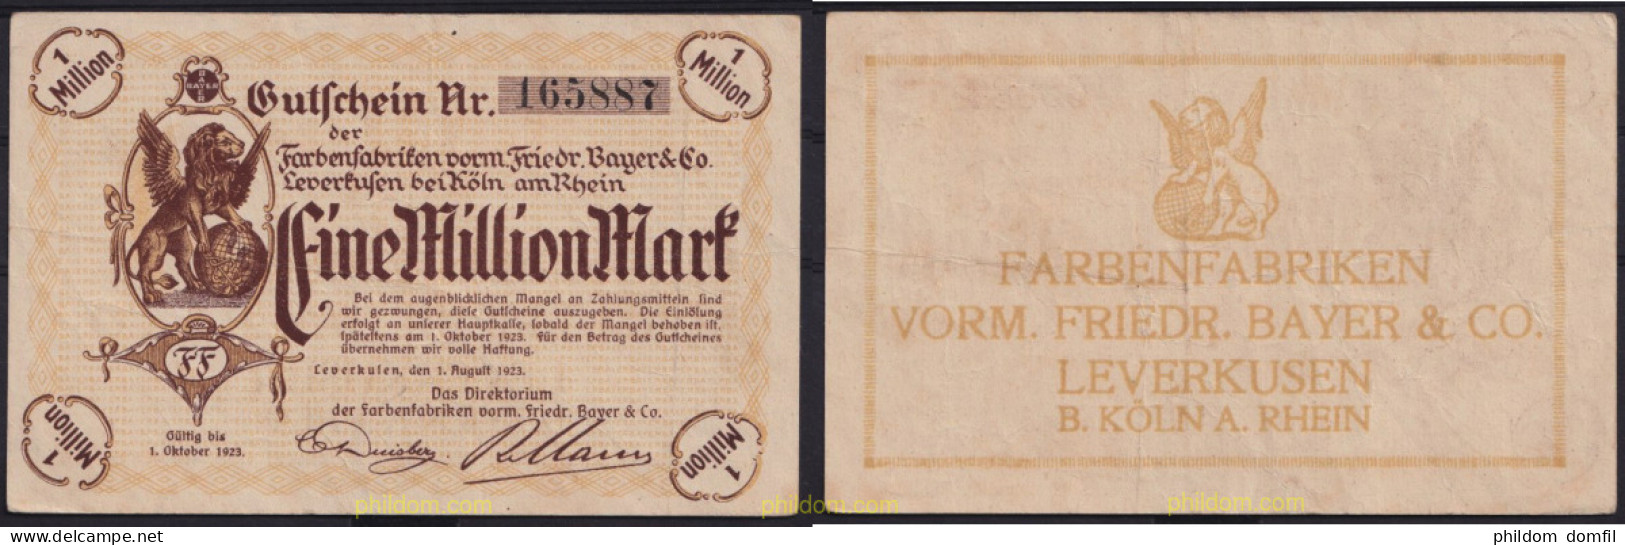 3638 ALEMANIA 1923 GERMANY LEVERKUSEN 1000000 MARK 1923 - Reichsschuldenverwaltung